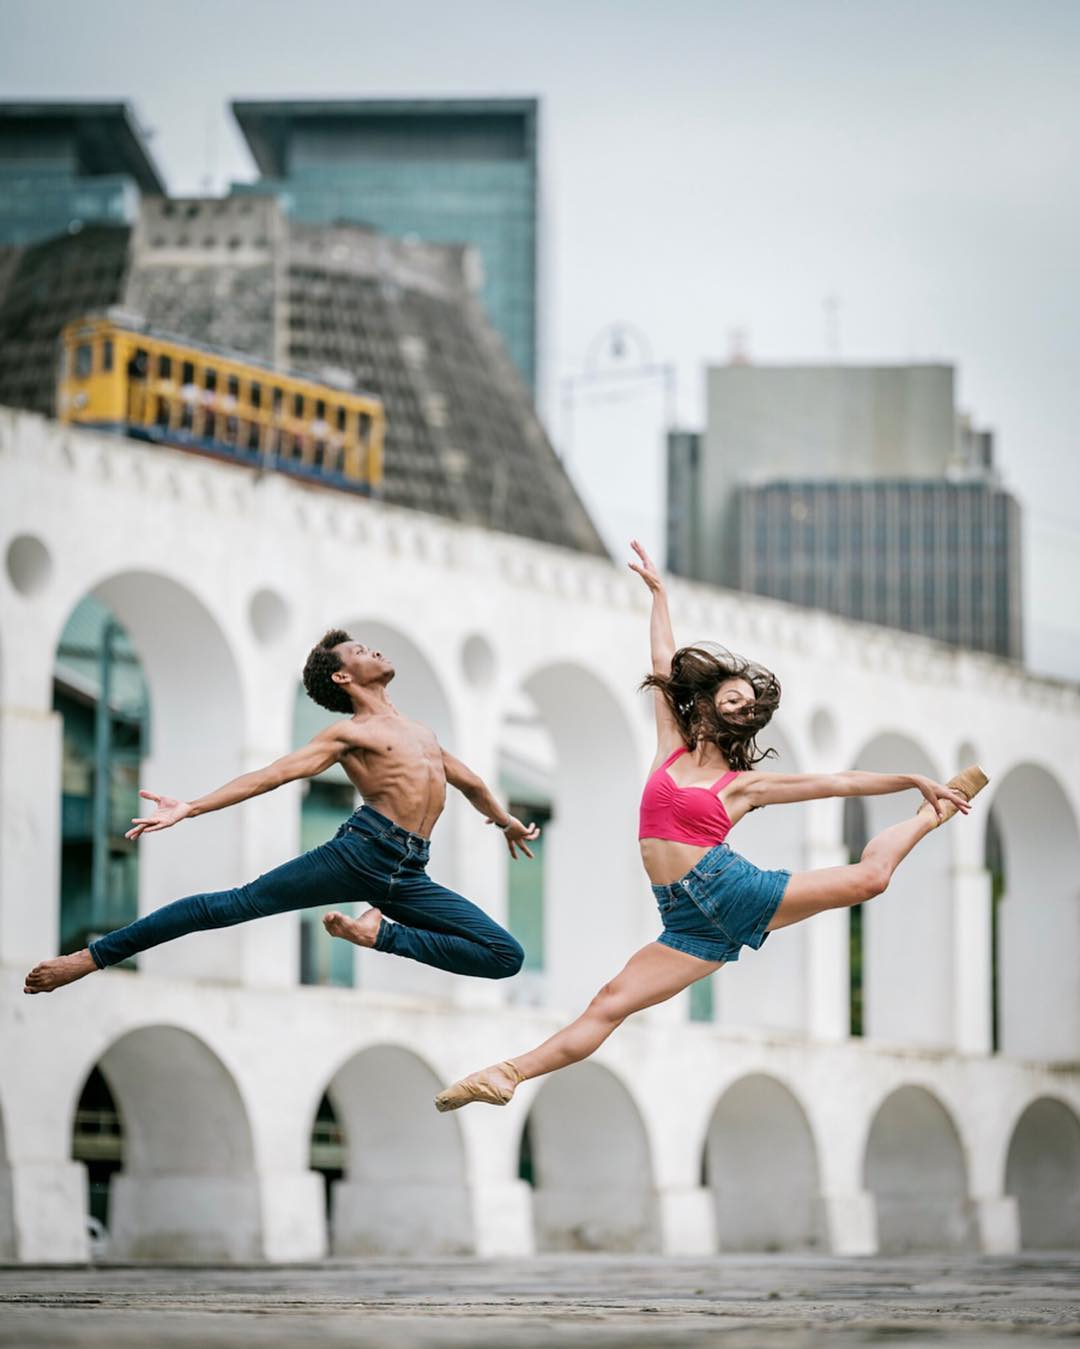 omarzrobles 27582139 1508008729506566 6295001066006118400 n - Dançarinos de balé praticam seus movimentos nas ruas para foto